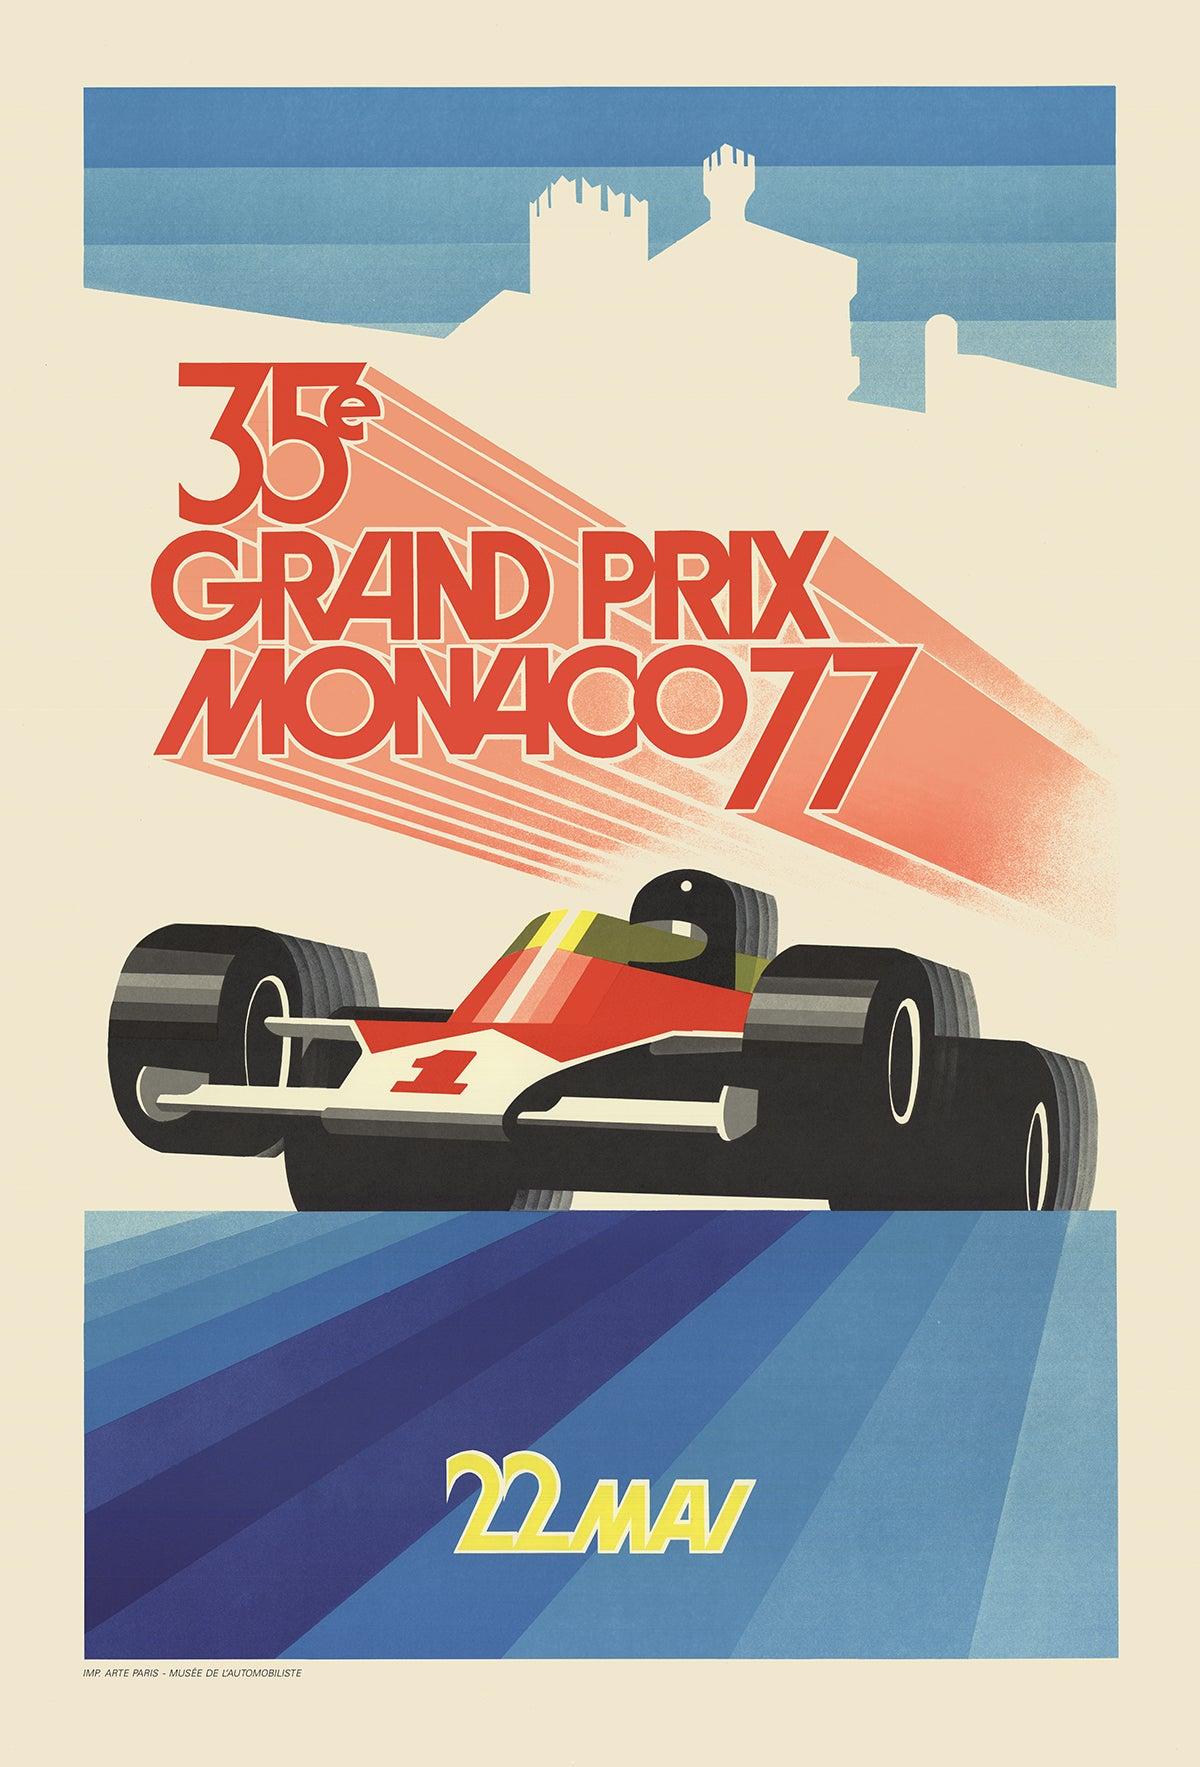 Papierformat: 39,5 x 26,75 Zoll (100,33 x 67,945 cm)
Bildgröße: 39,5 x 26,75 Zoll (100,33 x 67,945 cm)
Gerahmt: Nein
Zustand: A: Neuwertig

Zusätzliche Details: Nachbildung des berühmten Grand-Prix-Rennens von Monaco aus dem Jahr 1977, das von